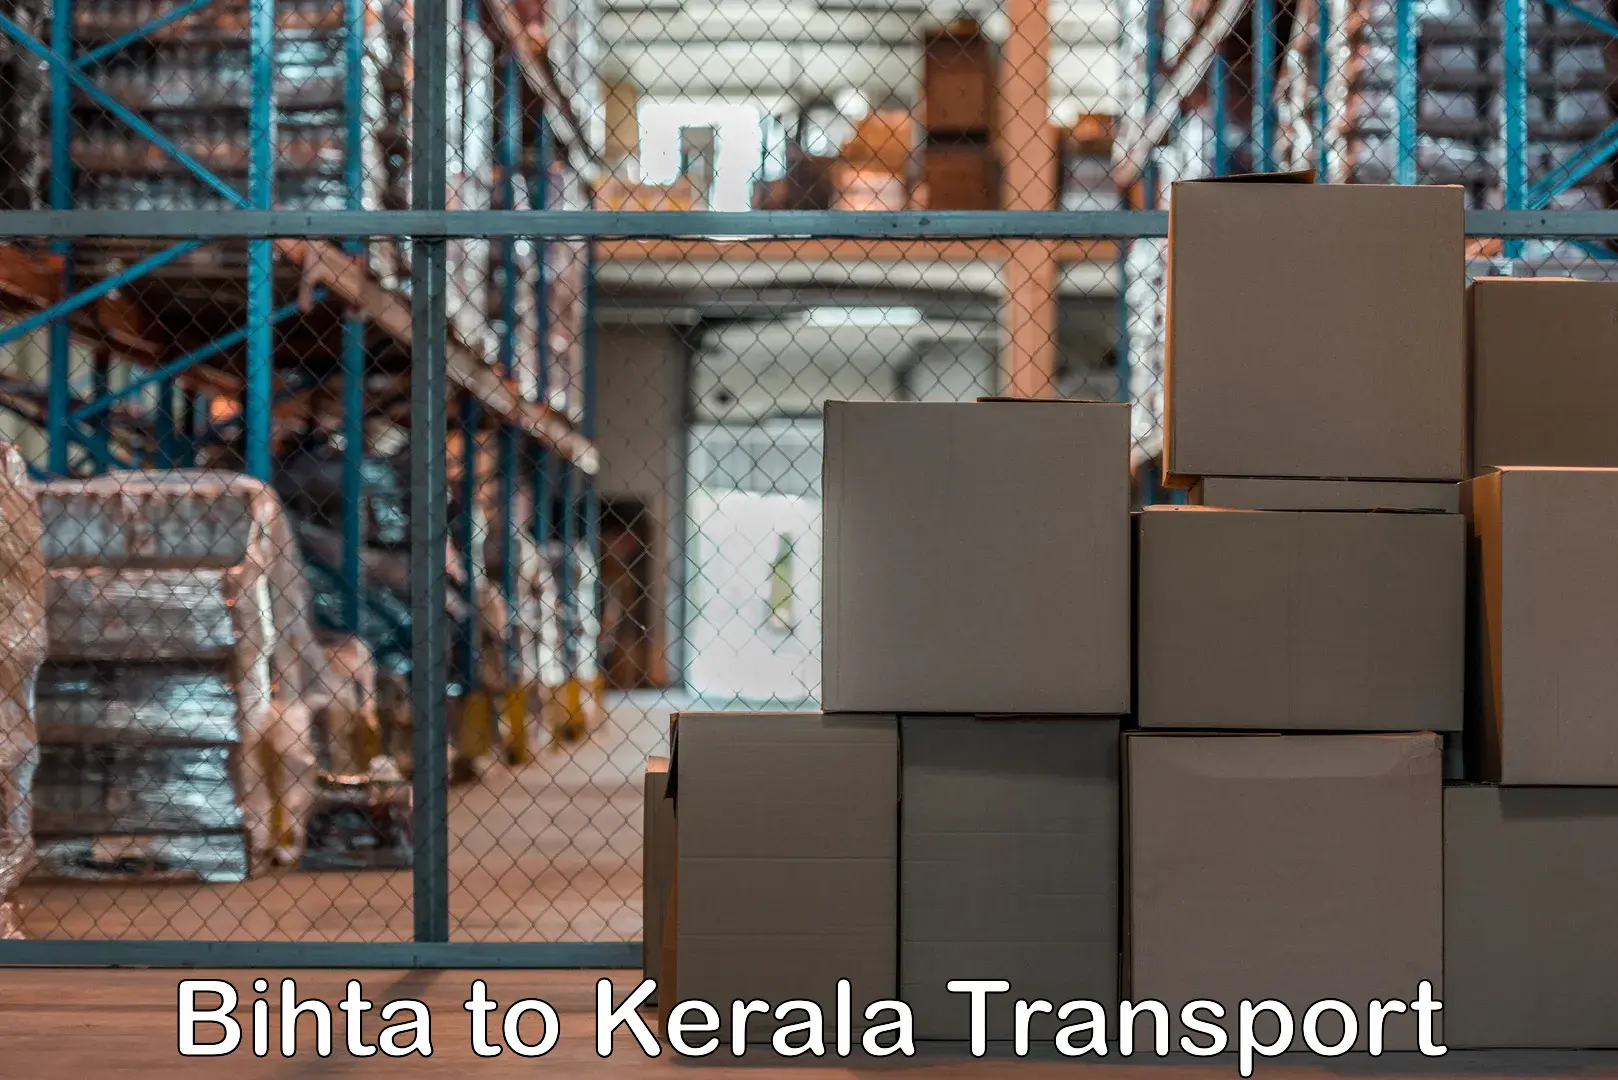 Furniture transport service Bihta to Ernakulam